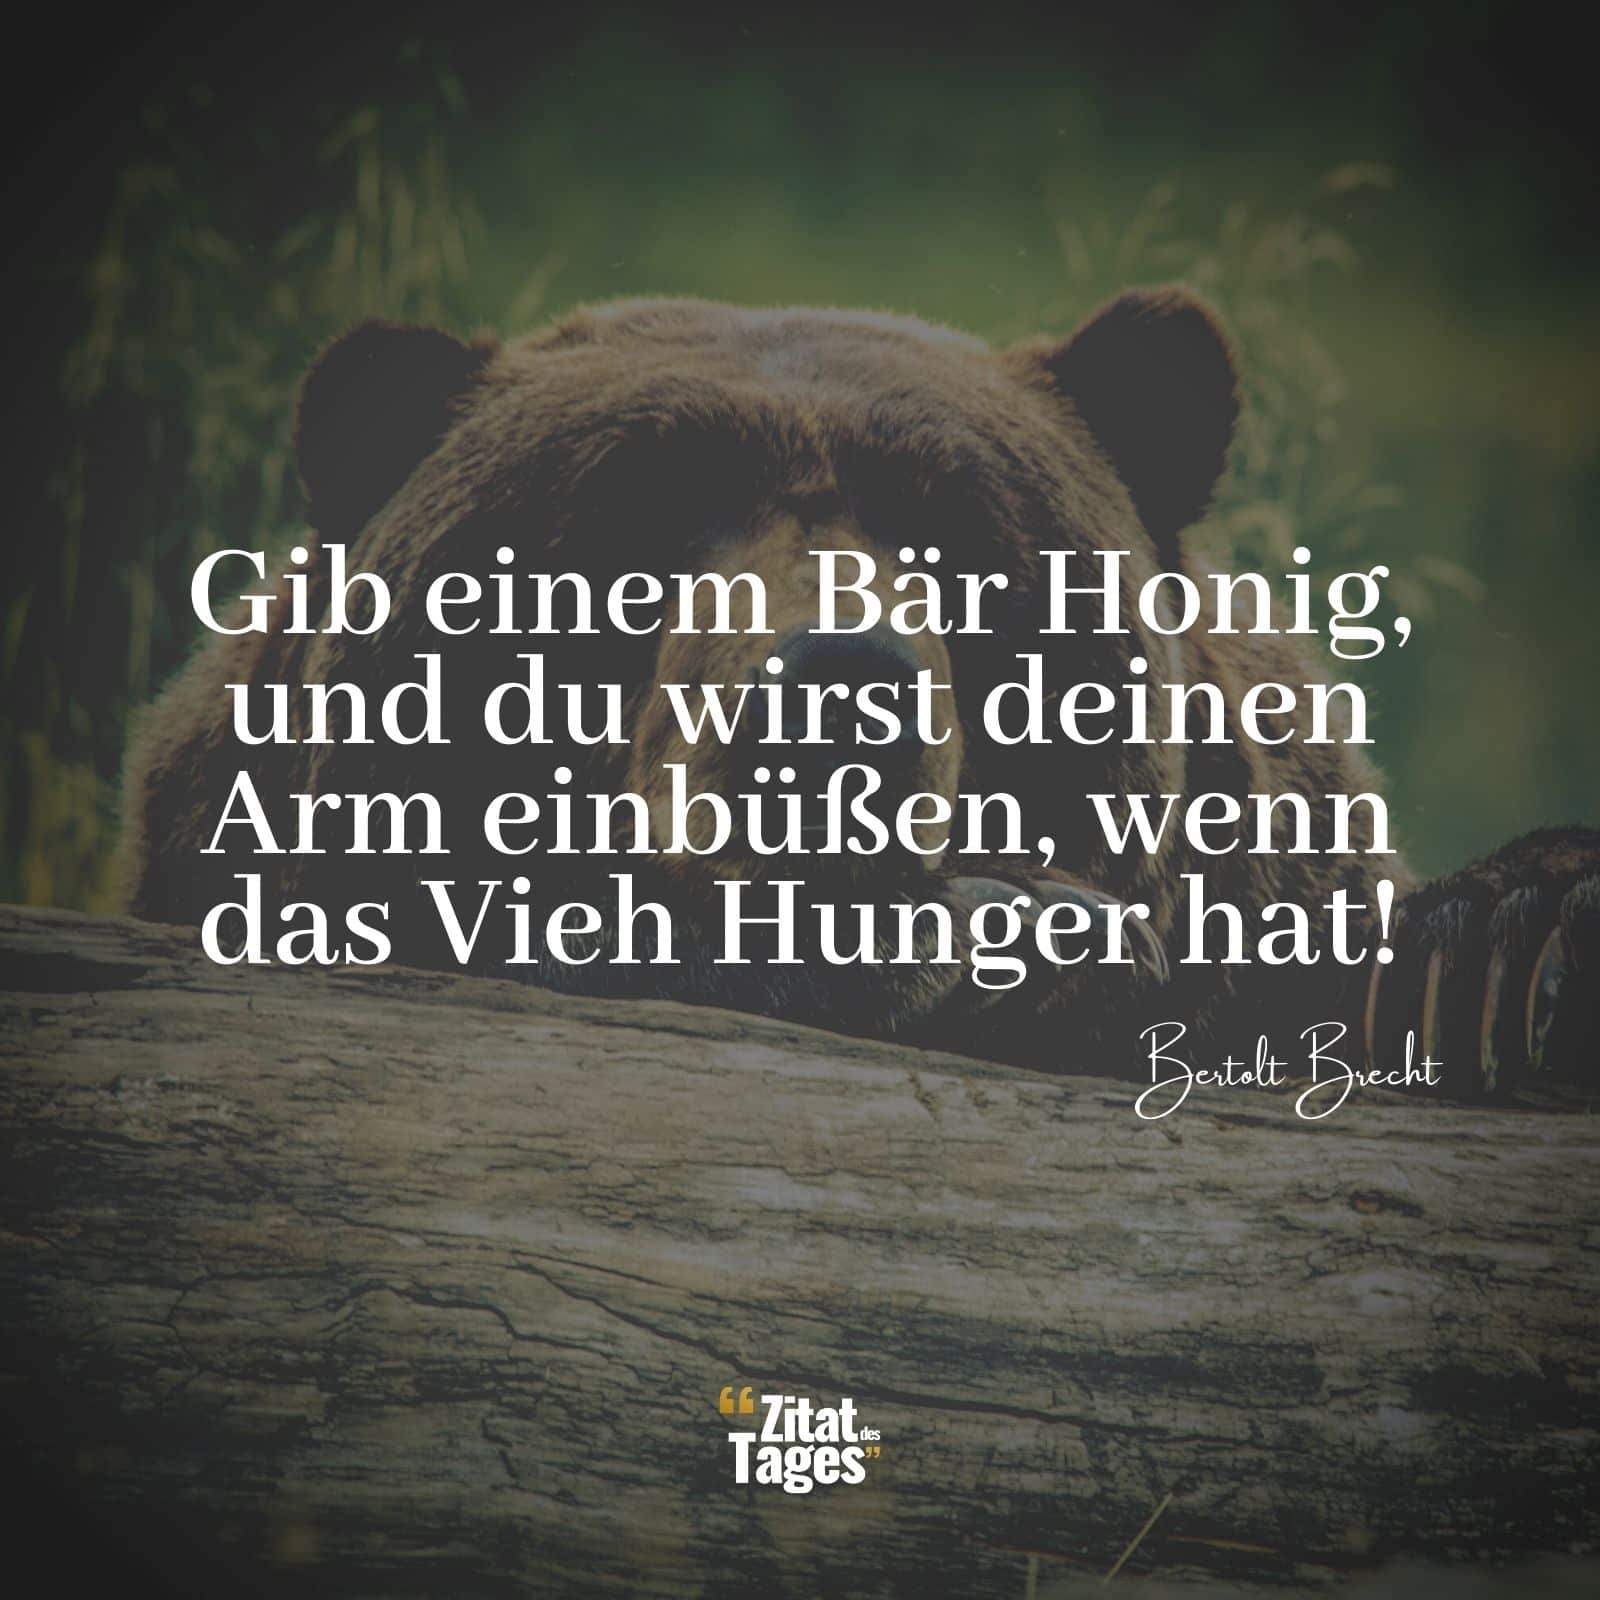 Gib einem Bär Honig, und du wirst deinen Arm einbüßen, wenn das Vieh Hunger hat! - Bertolt Brecht